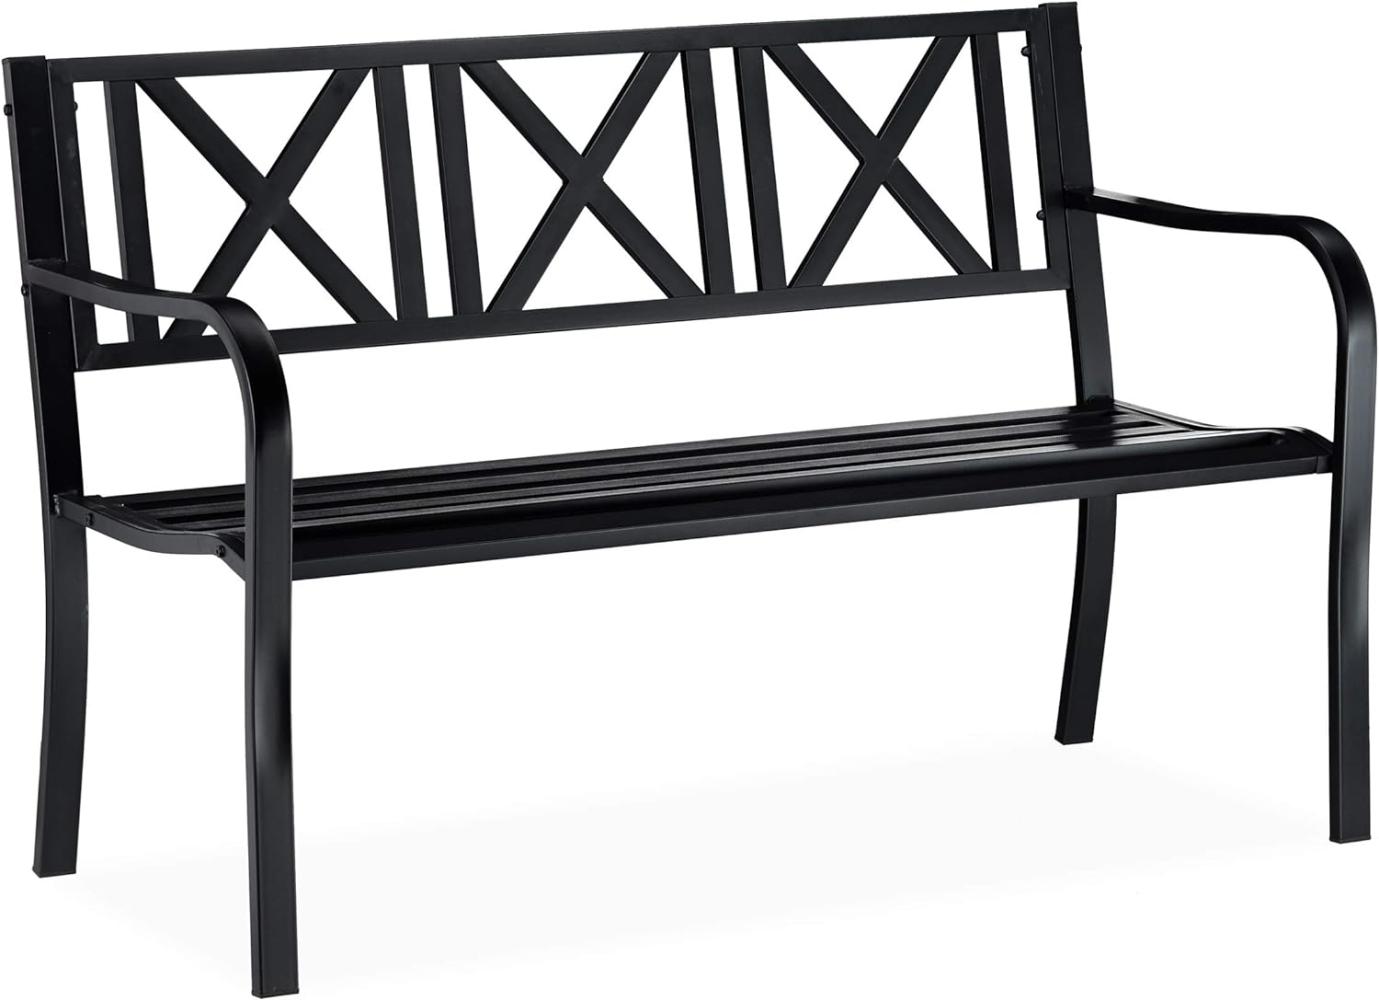 Relaxdays - Gartenbank aus Metall, 2-Sitzer, robust, für Terrasse, Balkon, Ruhebank HxBxT 81 x 127 x 56 cm, Stahl, schwarz Bild 1